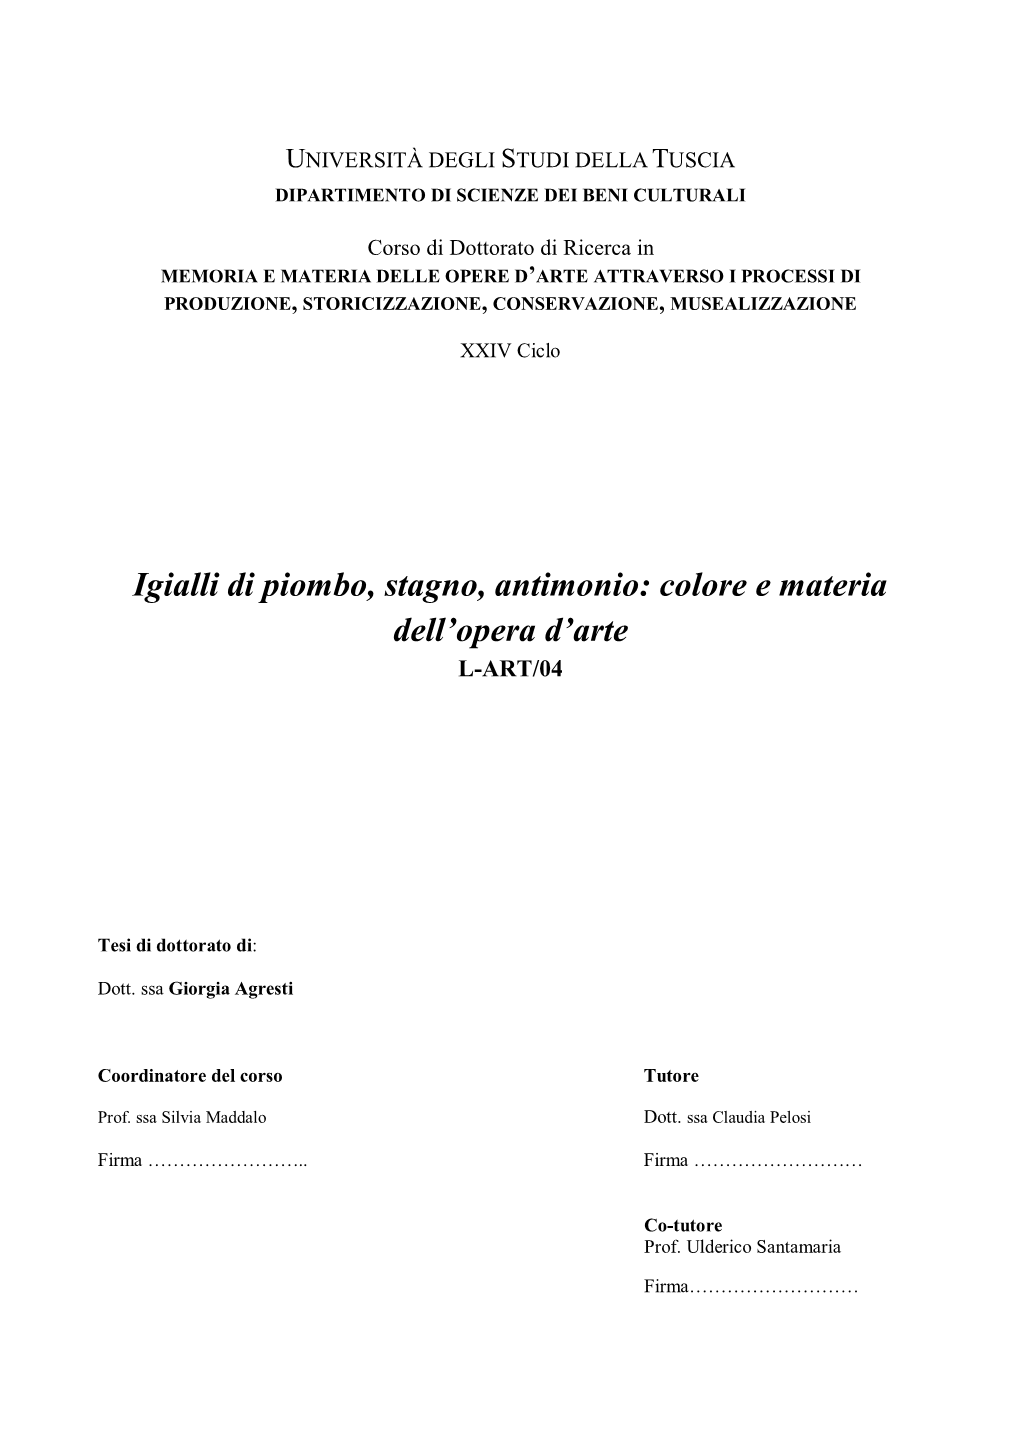 Igialli Di Piombo, Stagno, Antimonio: Colore E Materia Dell'opera D'arte